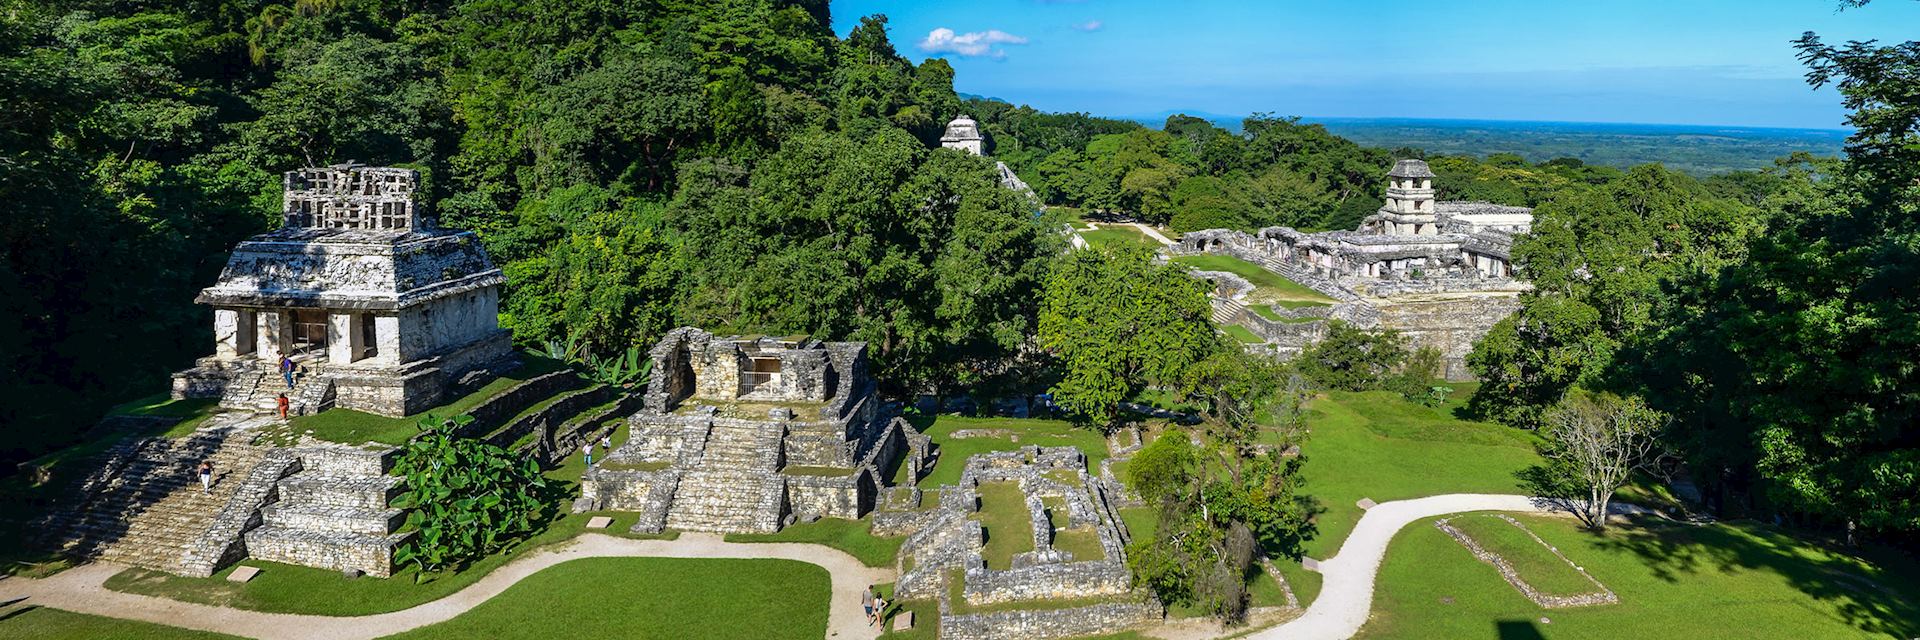 Maya ruins at Palenque, Mexico 